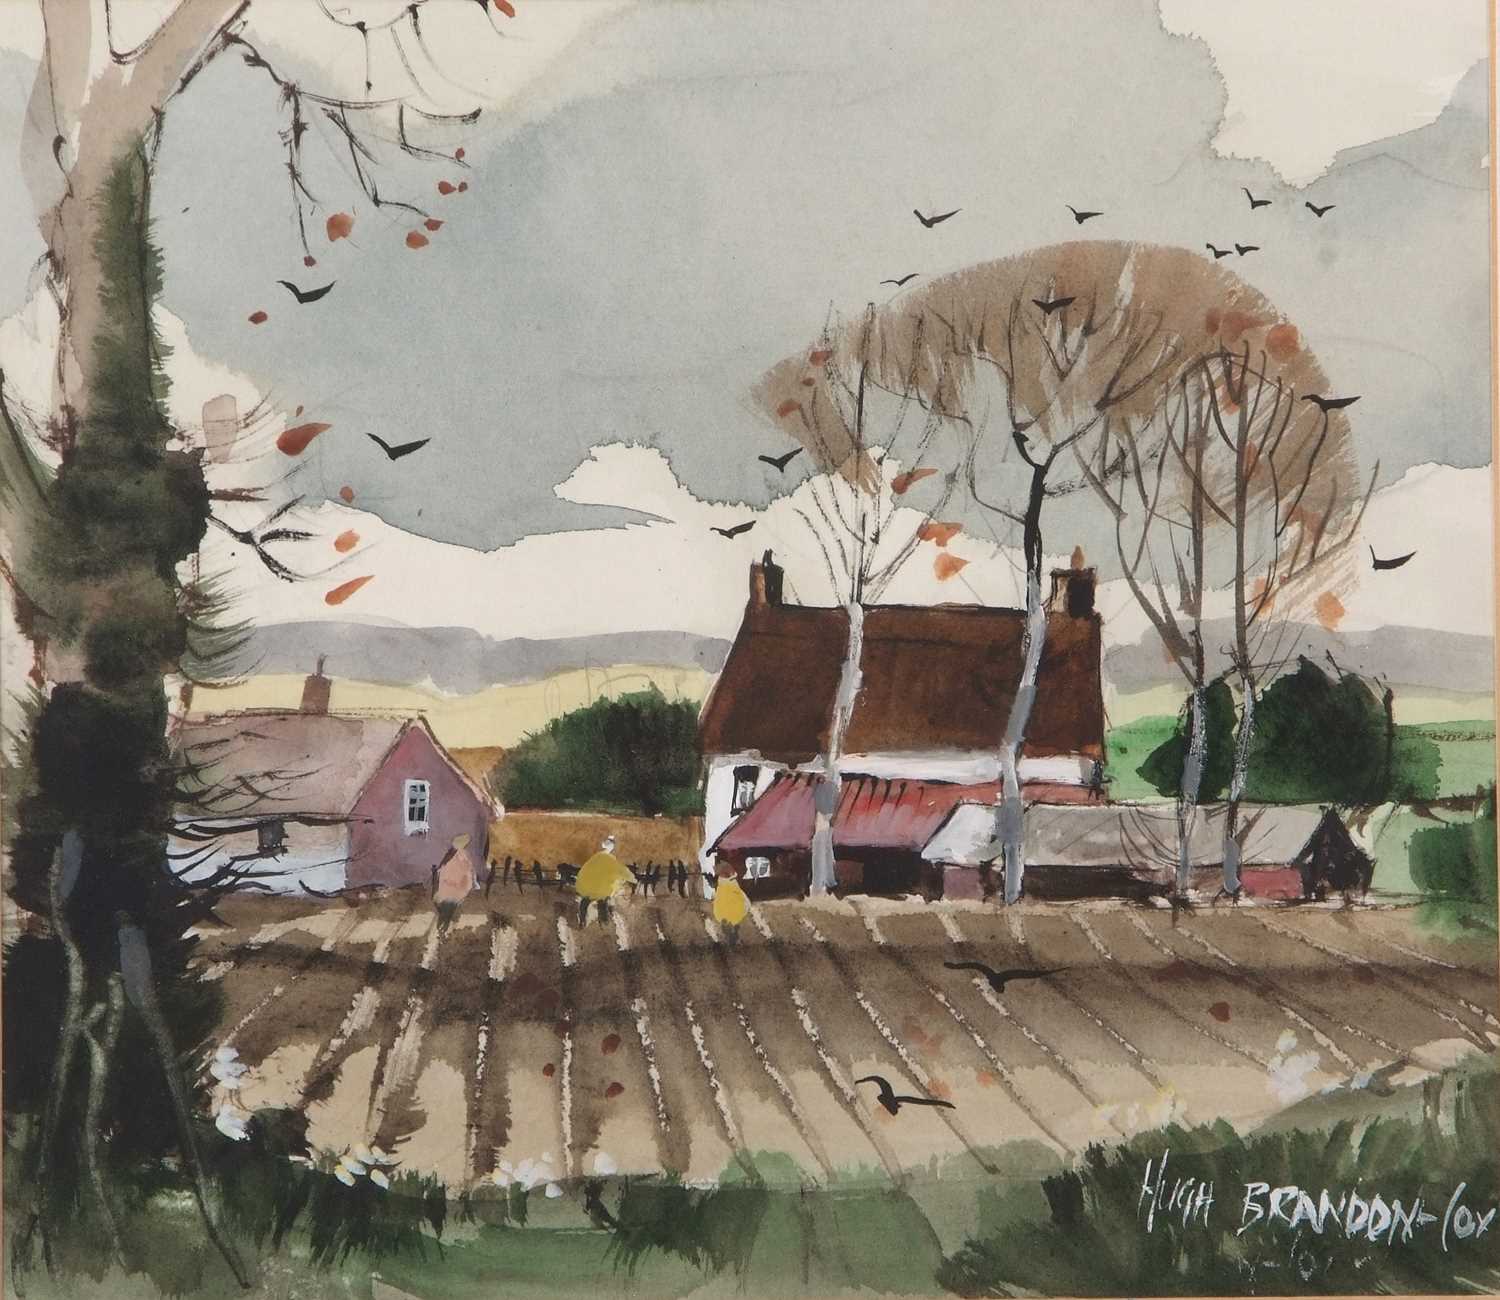 Hugh Brandon Cox (British,1917-2003), Stakesby landscape scene, watercolour and gouache, signed,